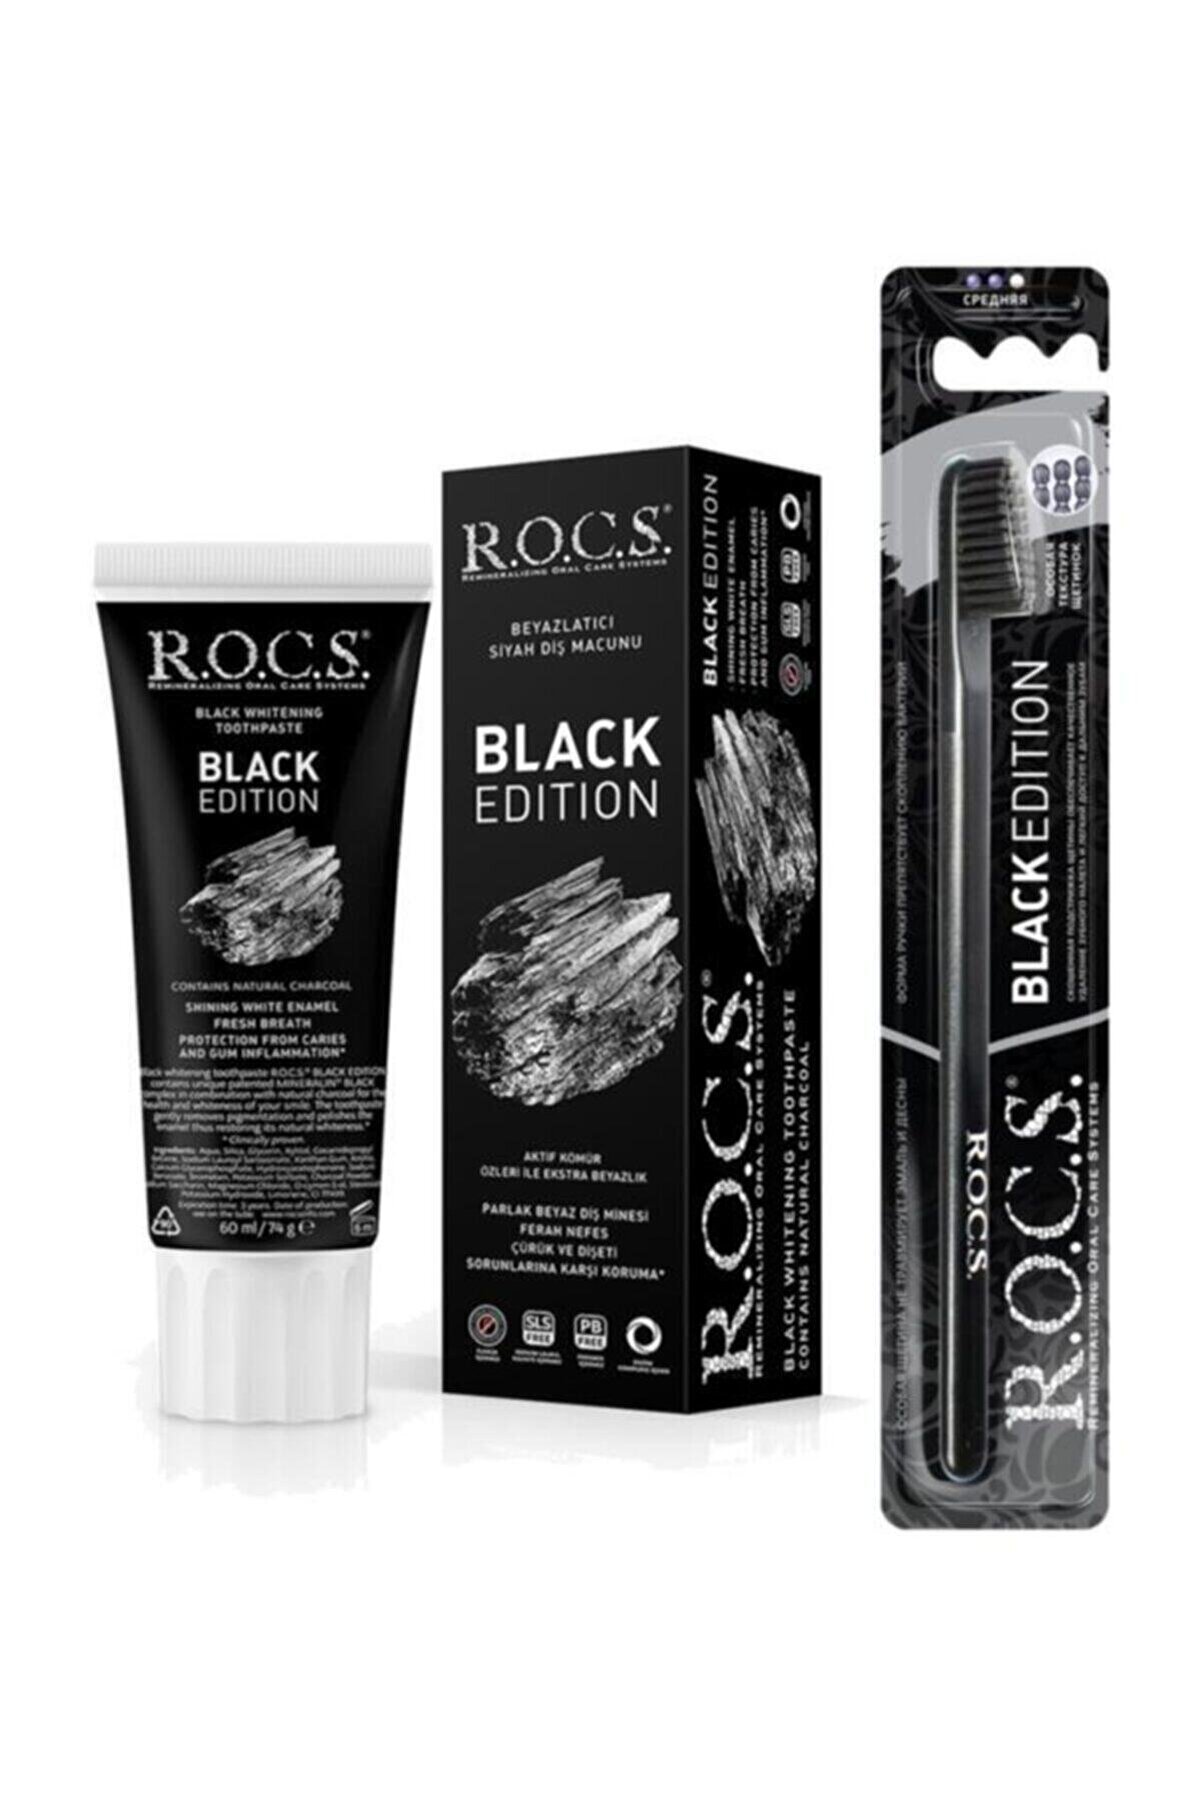 R.O.C.S. Rocs Black Edıtıon Kömür Beyazlatıcı Diş Macunu Ve Diş Fırçası